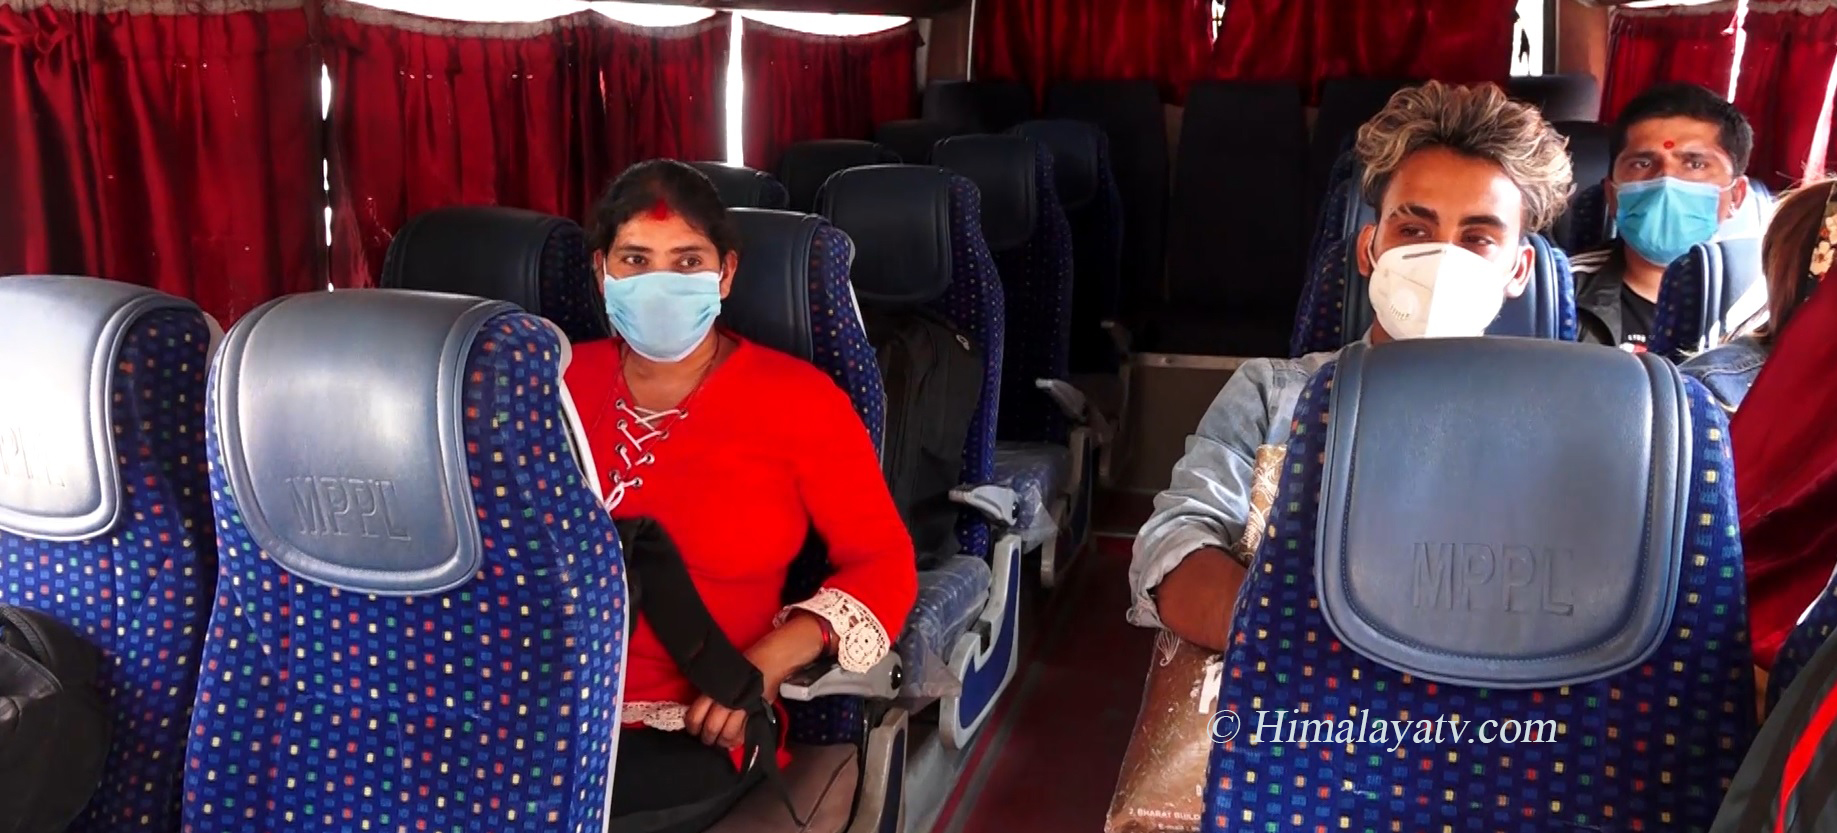 दशै‌ंमा घर जाने यात्रु घटेः लामो दूरीका बस पनि खाली गुड्दै (भिडियोसहित)